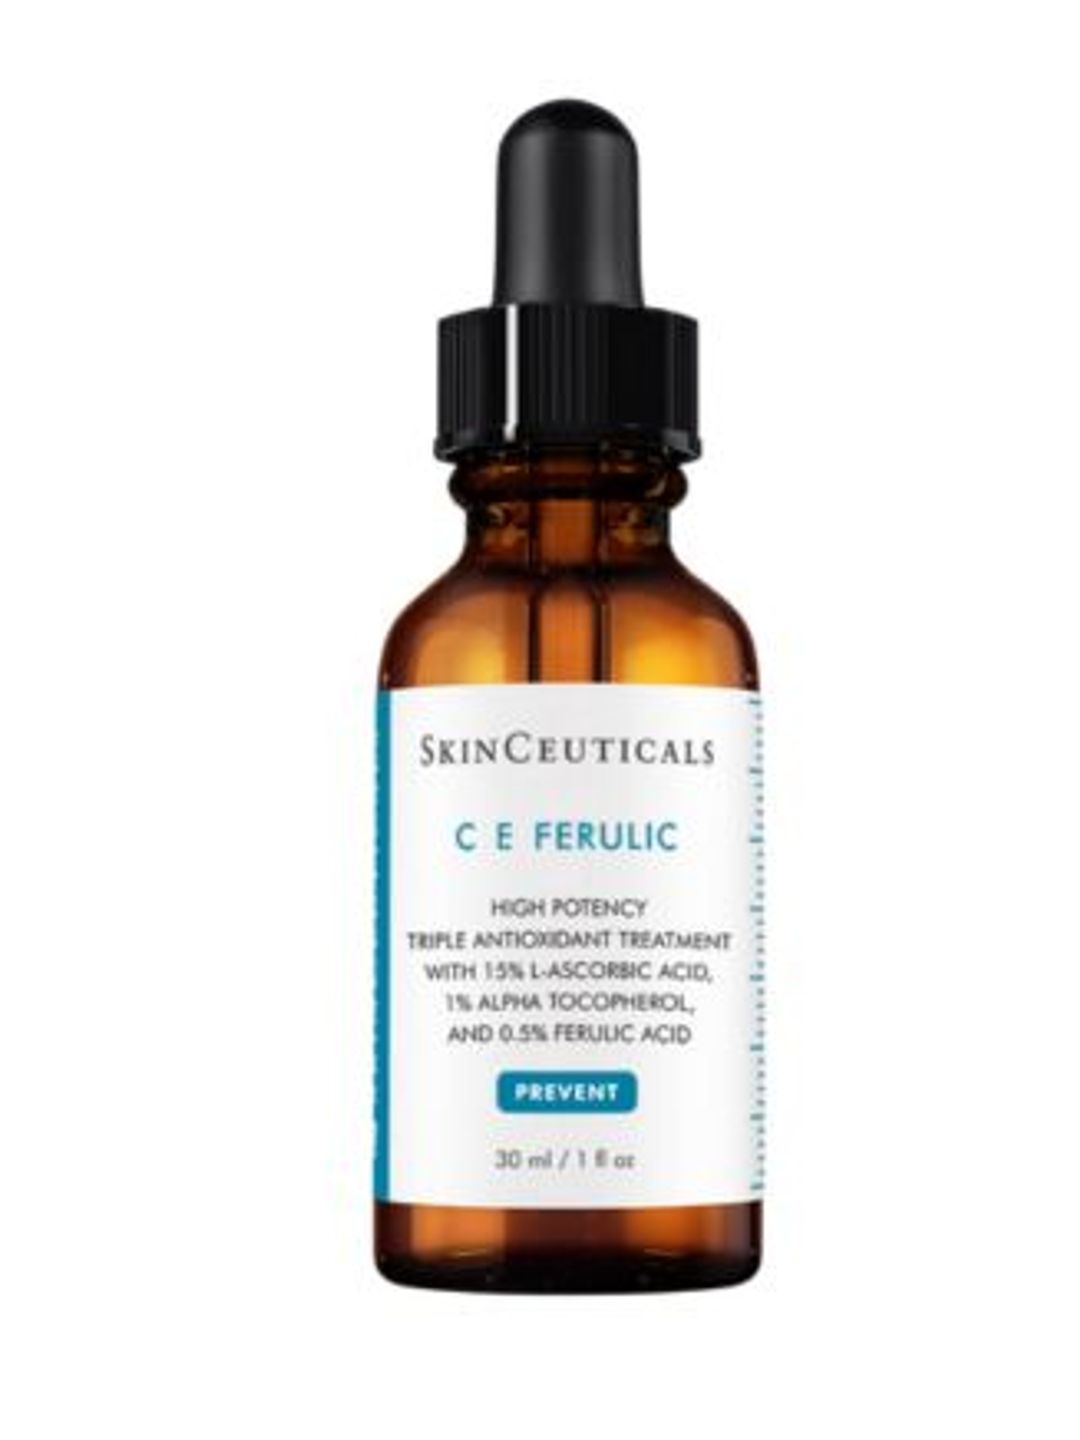 C E Ferulic Serum - SkinCeuticals